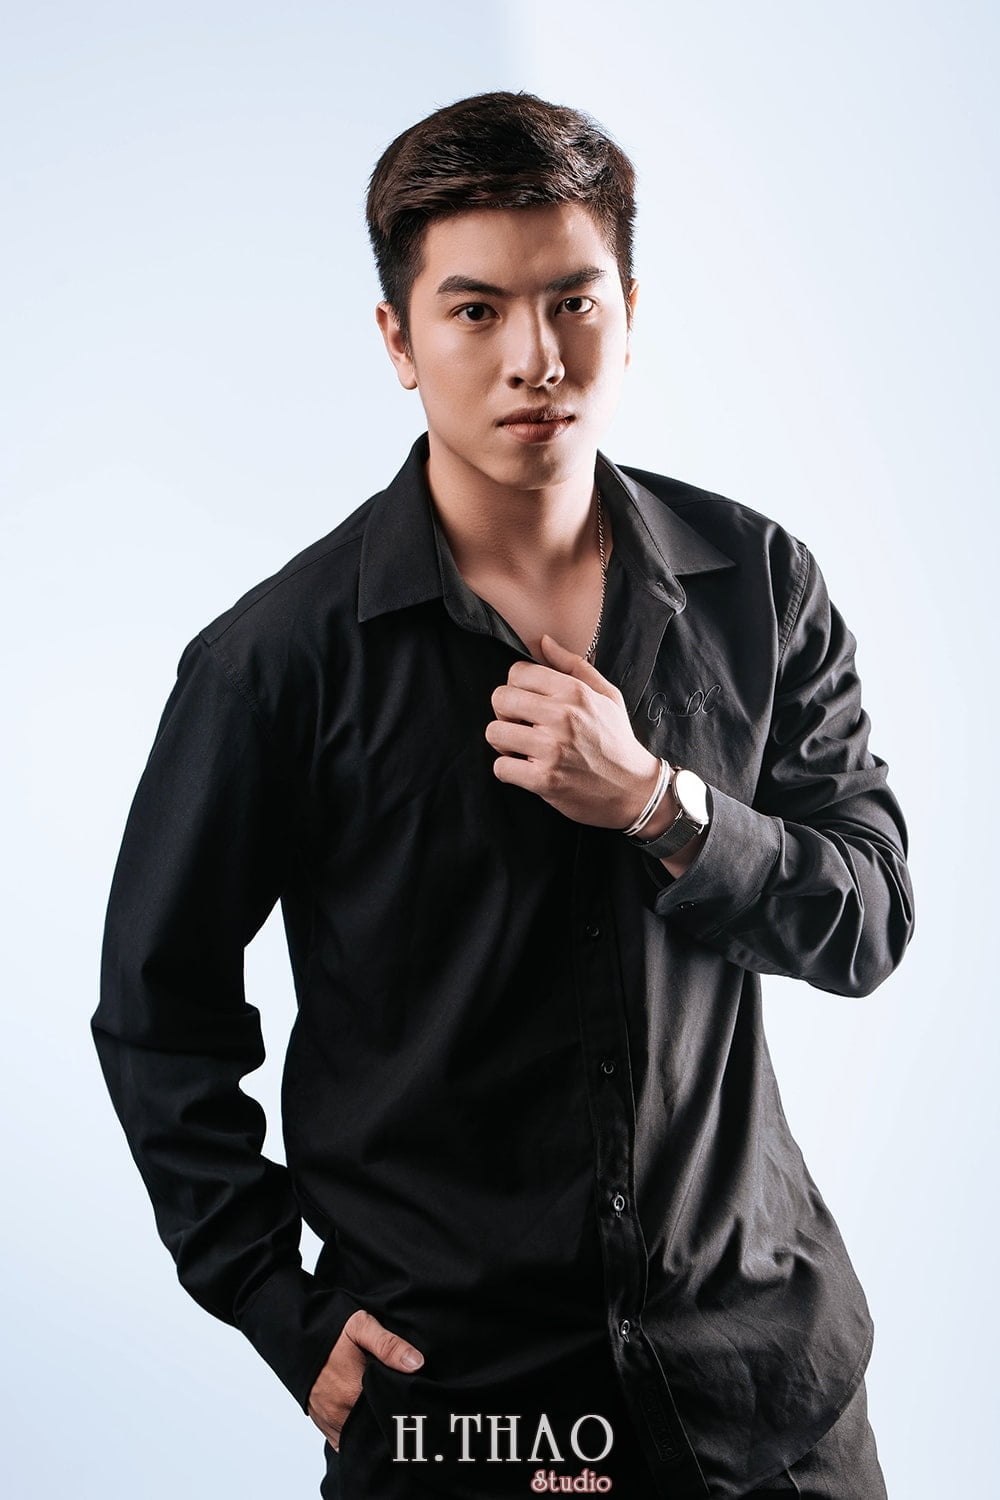 Anh profile style Han Quoc 7 min - Album ảnh profile bạn Dương phong cách hàn quốc - HThao Studio